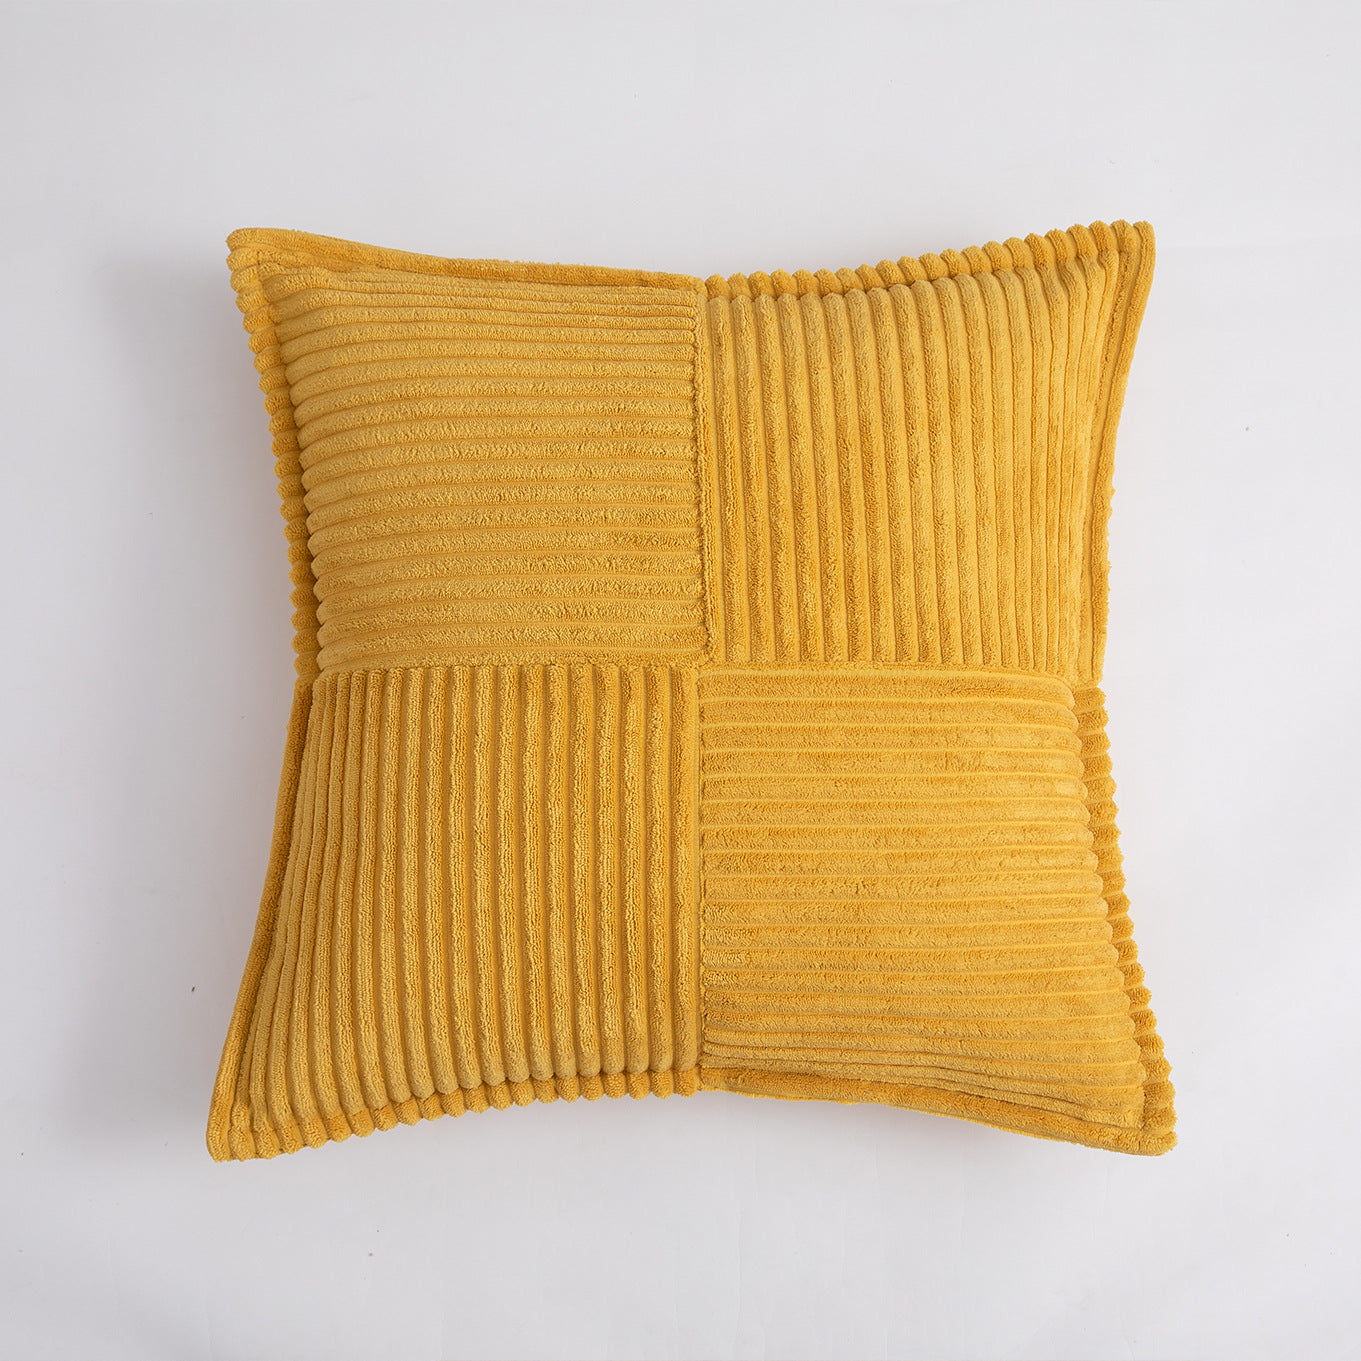 'Bria' Pillowcase Corduroy Cushion Cover